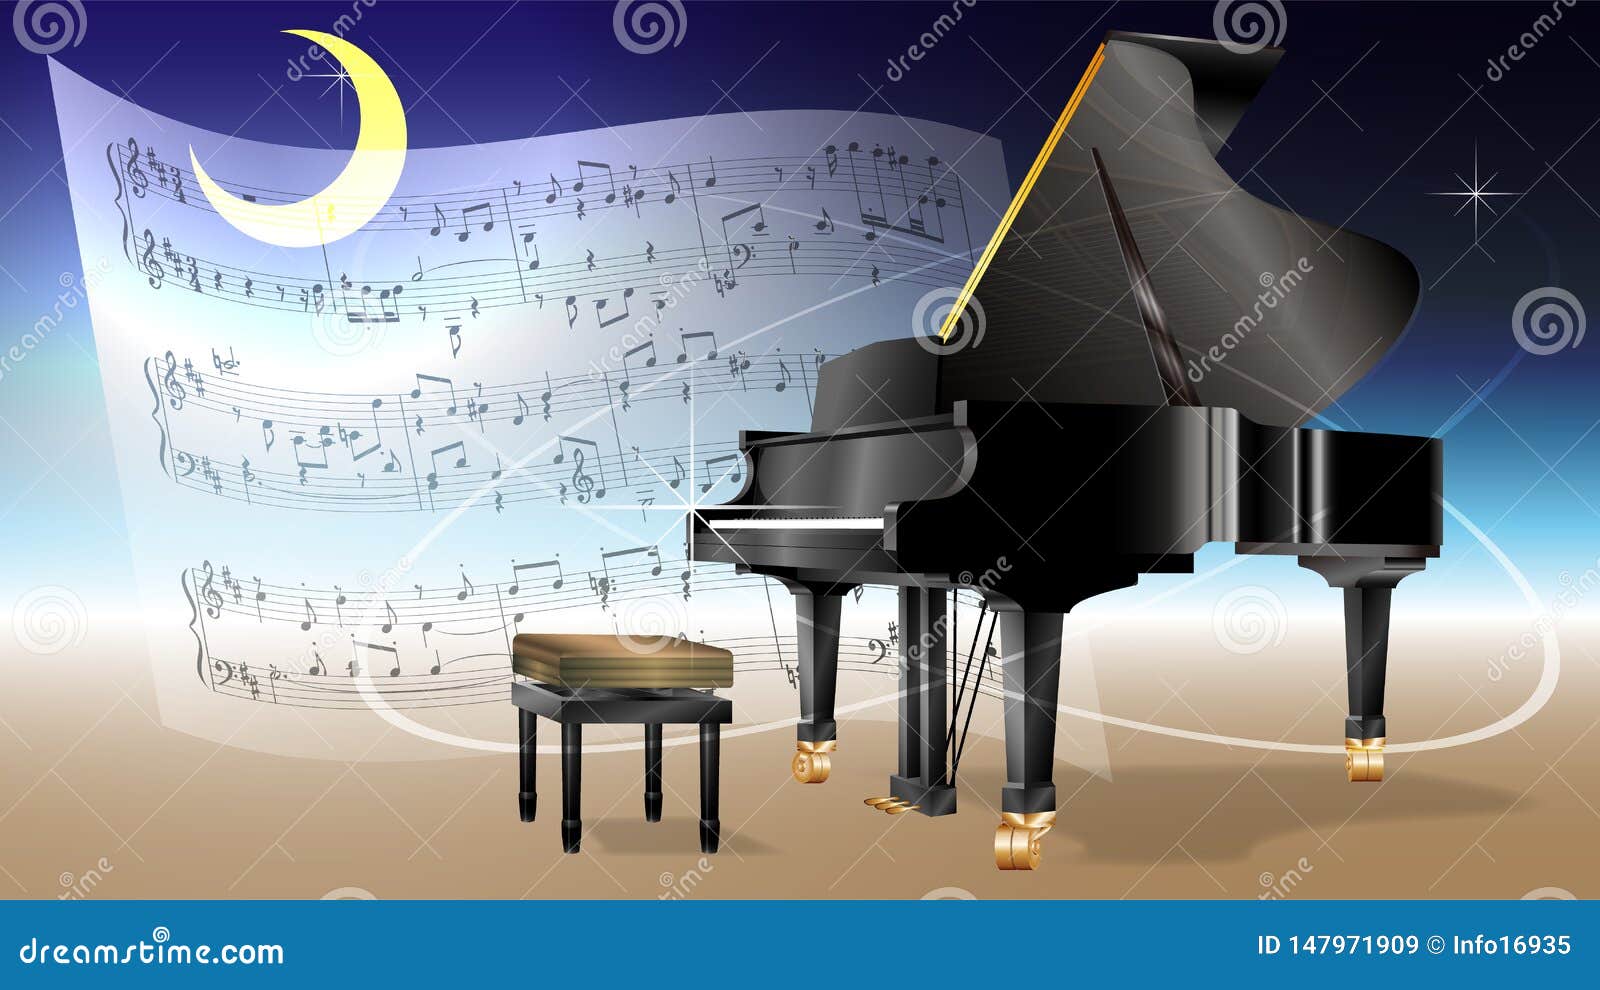 Hình Nền Sơ đồ Phím đàn Piano đen Trắng Tải Về Miễn Phí Hình ảnh piano  bản nhạc các phím đen và trắng Sáng Tạo Từ Lovepik